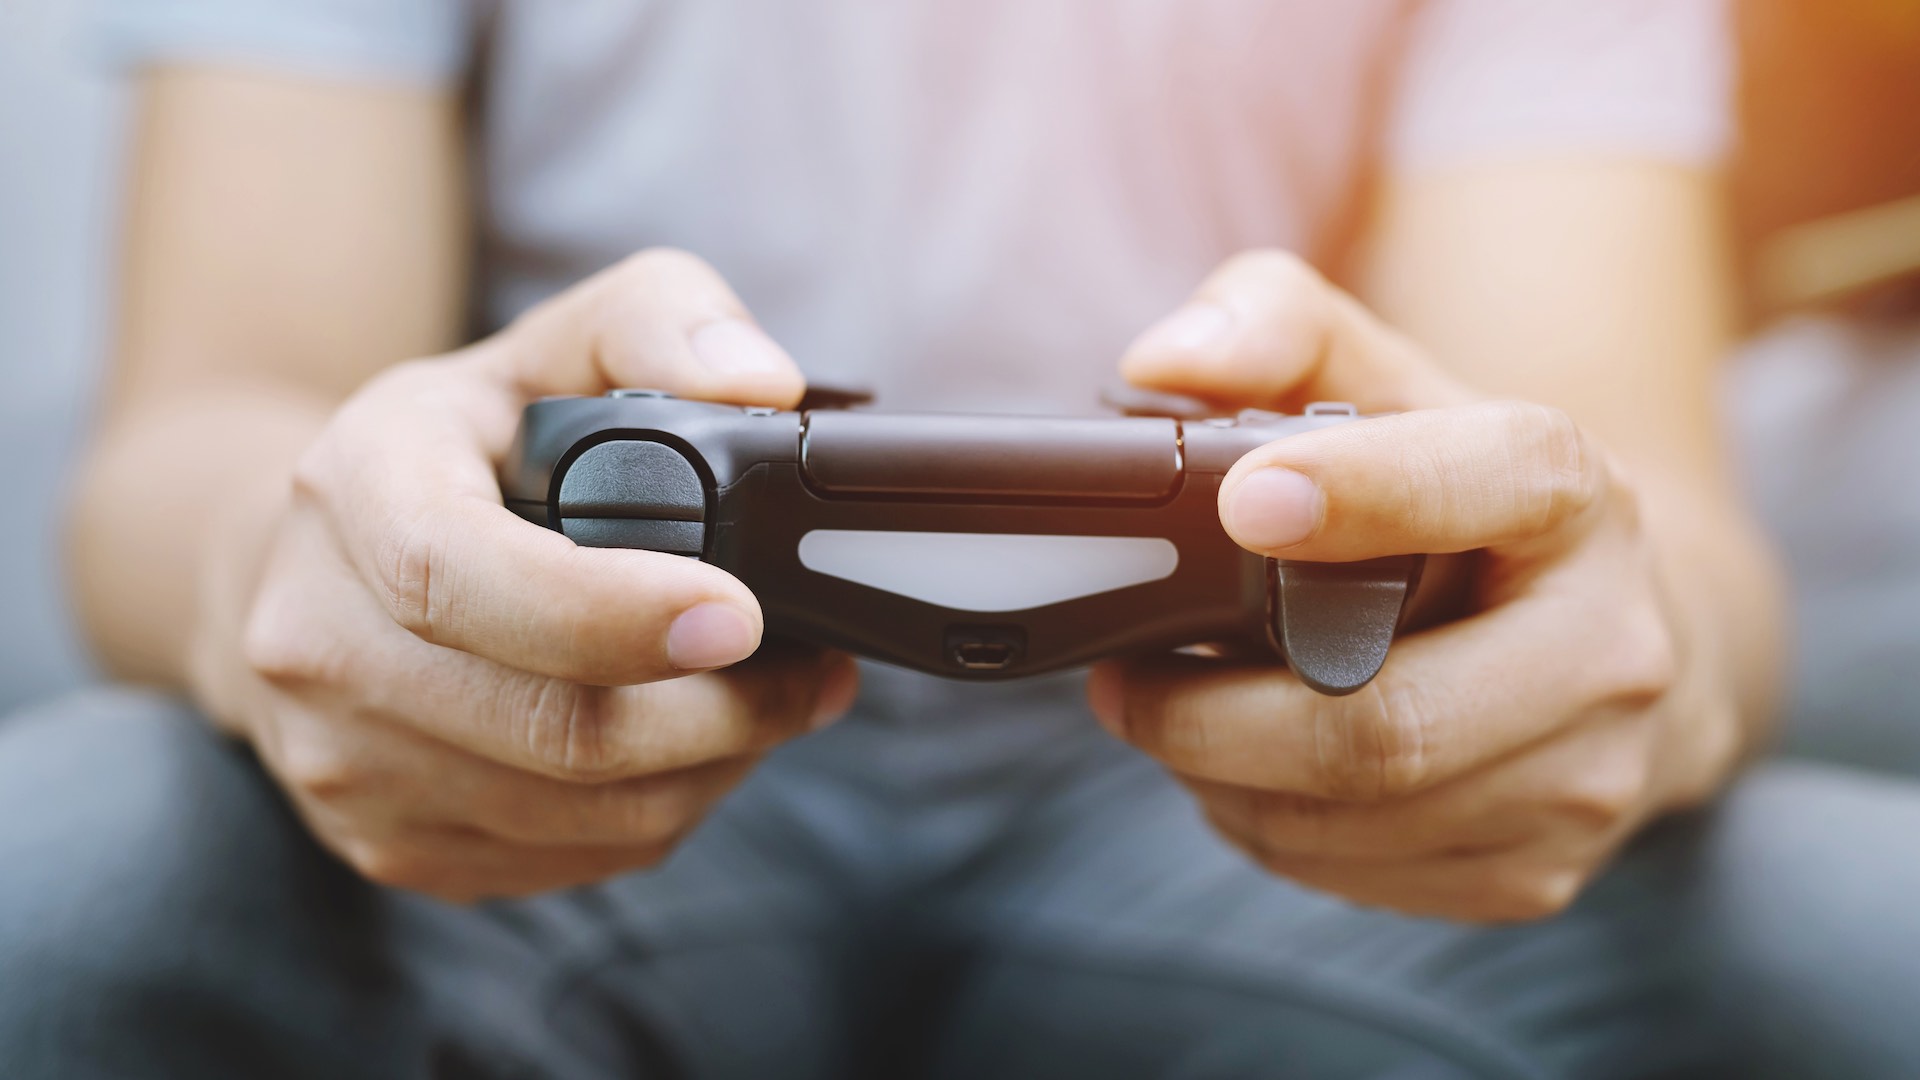 索尼互动娱乐因 PlayStation Store 定价面临 80 亿美元诉讼